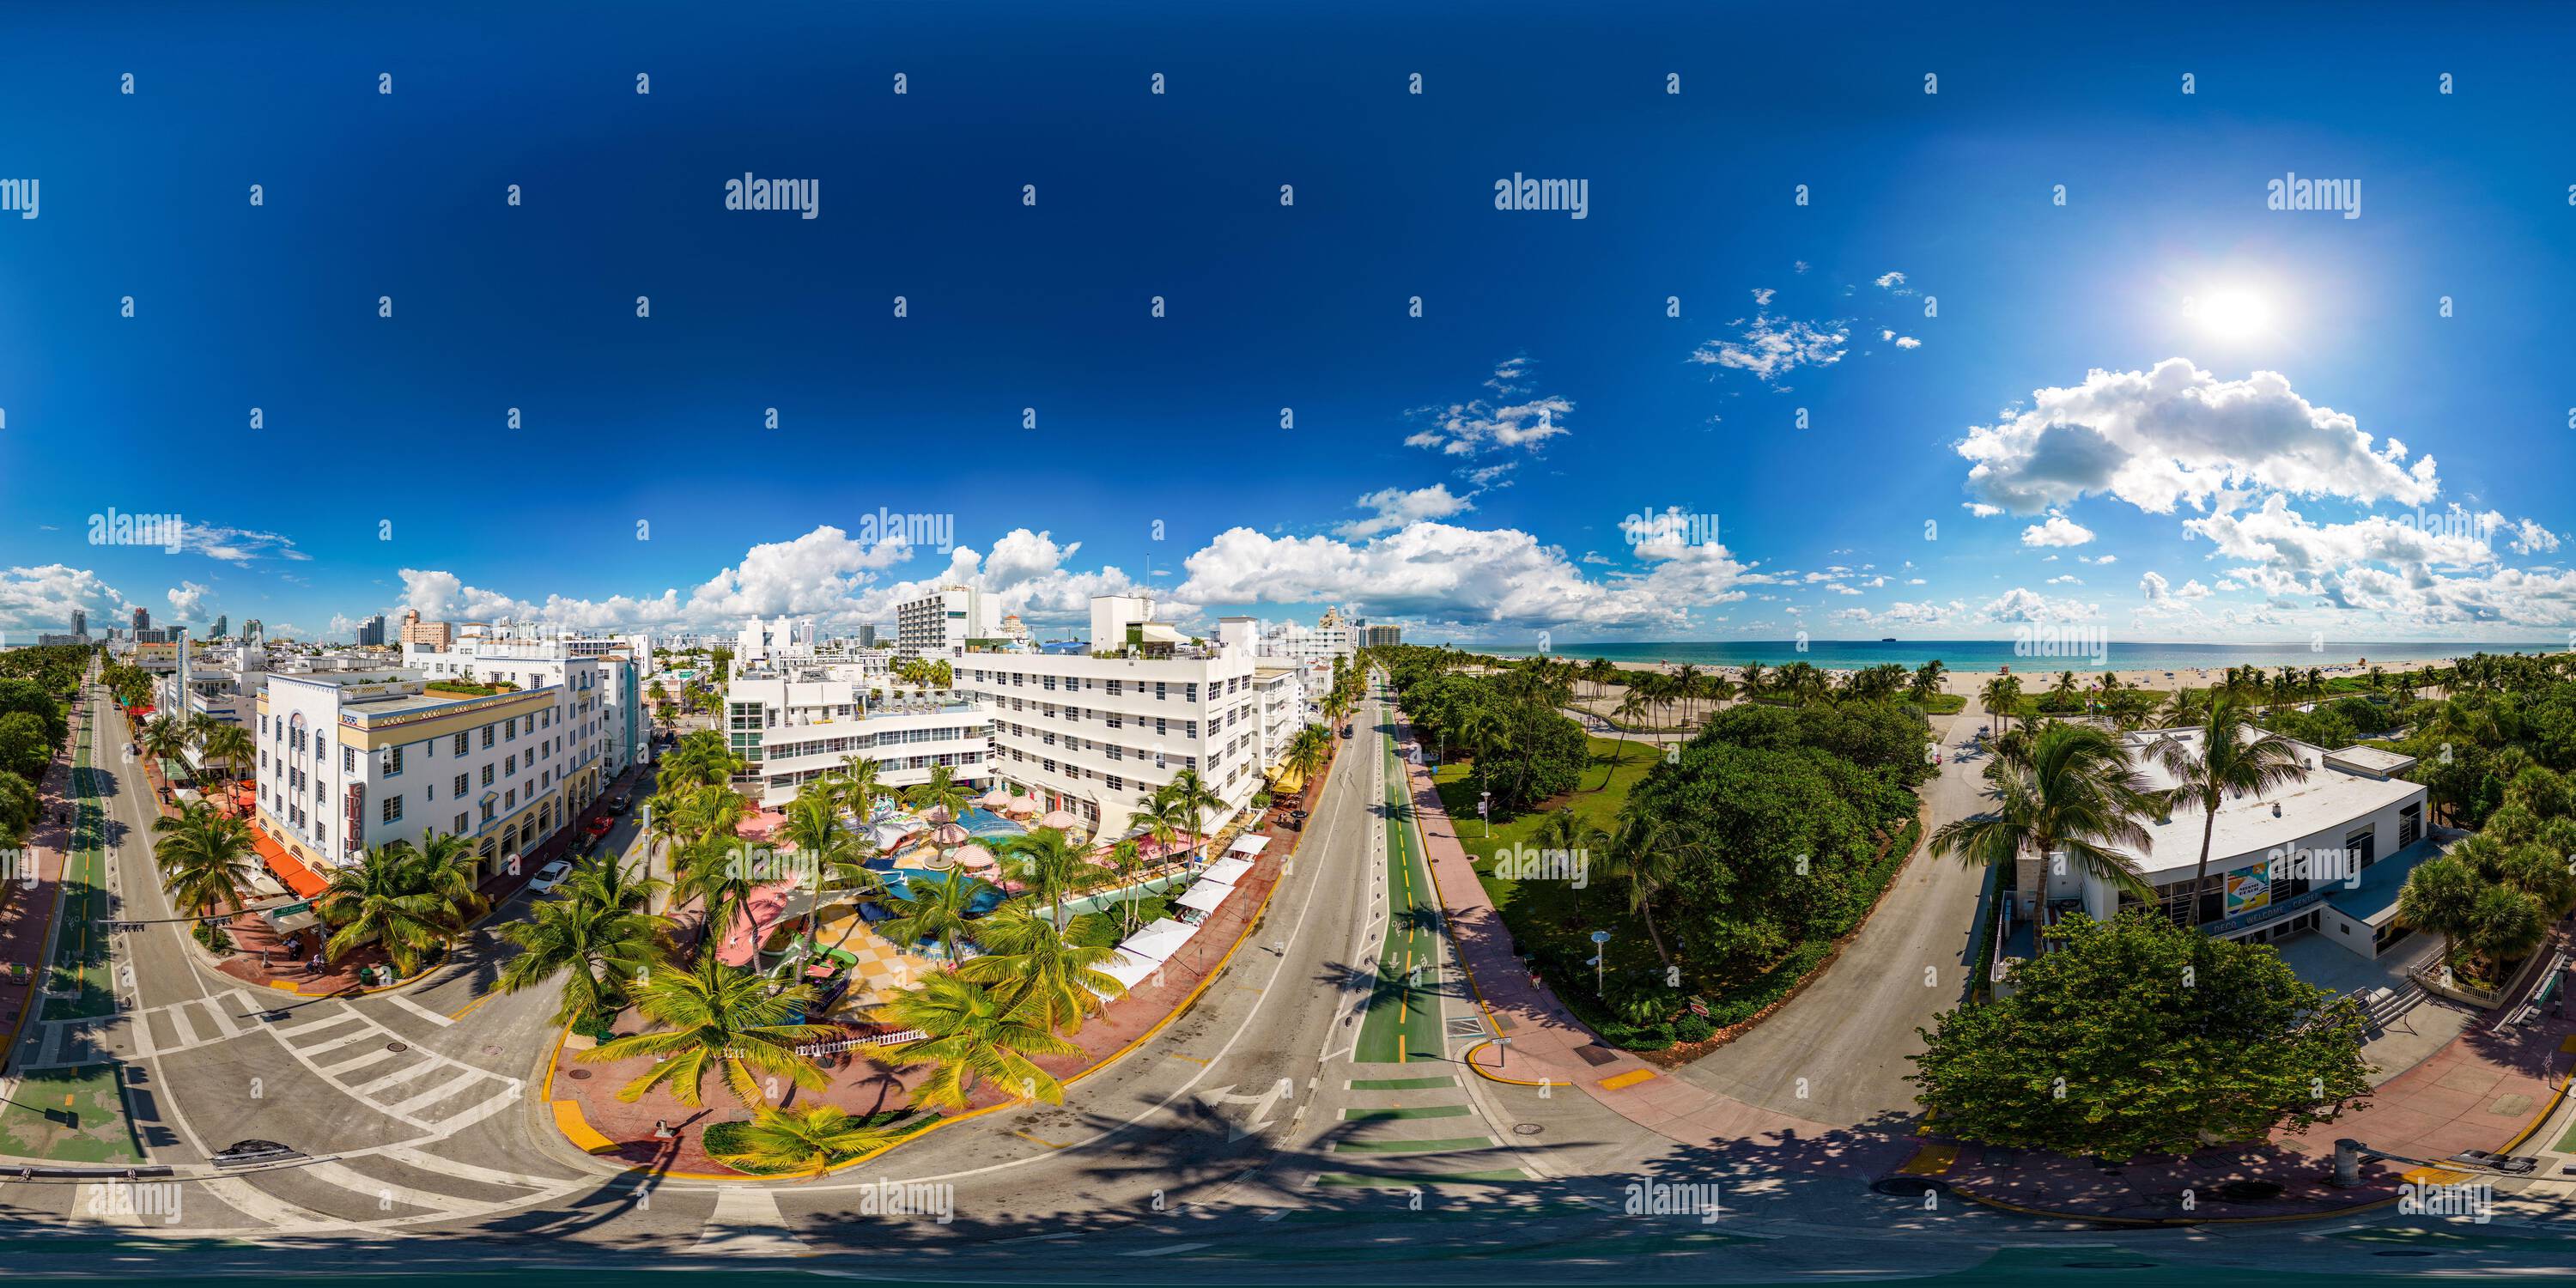 Vue panoramique à 360° de Miami Beach, FL, Etats-Unis - 6 octobre 2022: Photographie aérienne 360 équirectangulaire Miami Beach South Beach Clevelander Hôtel et bar de la piscine